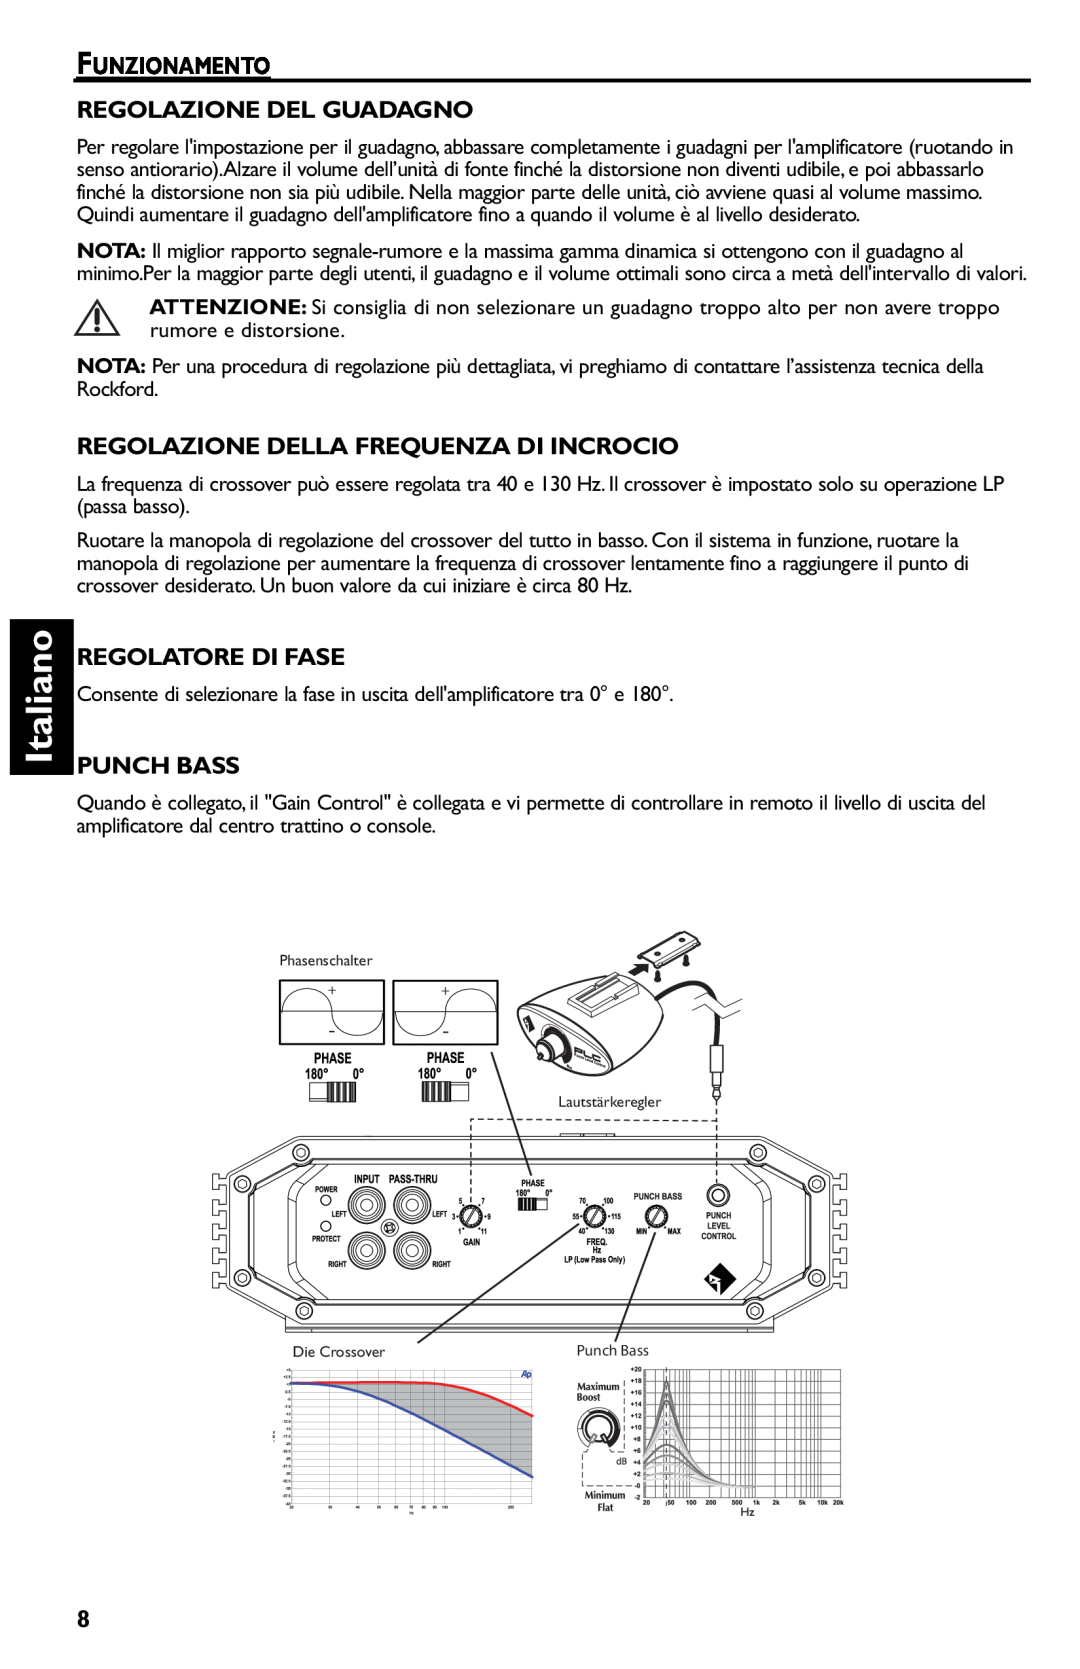 Rockford Fosgate R500-1 manual Italiano, Funzionamento Regolazione Del Guadagno, Regolazione Della Frequenza Di Incrocio 